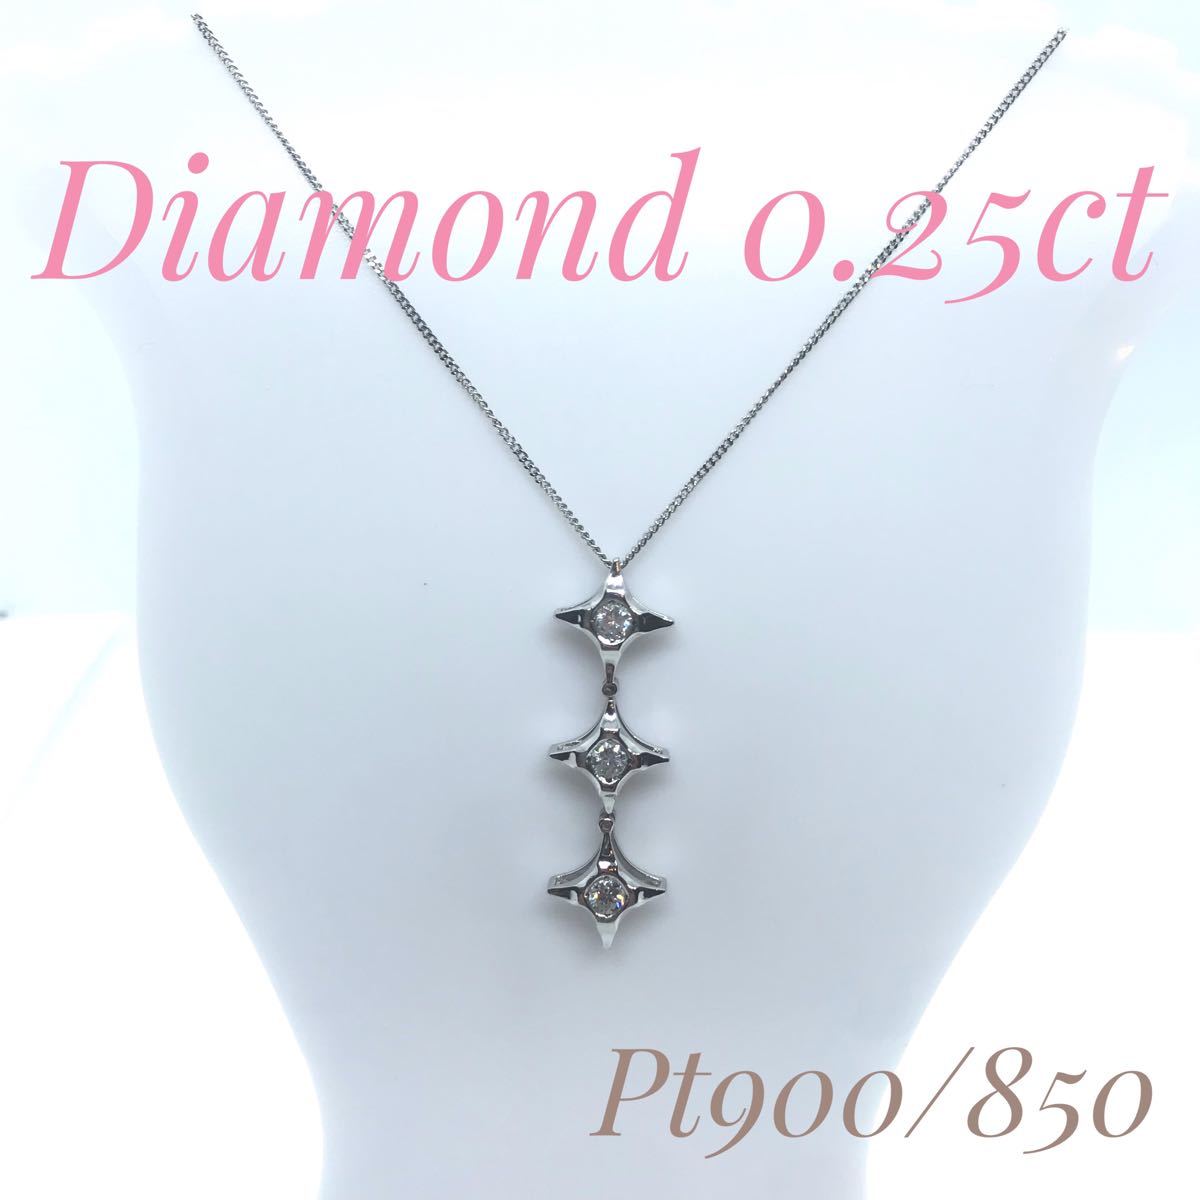 『2年保証』アクセサリーダイヤモンド 0.25ct pt900/850 ネックレス キラキラ ペンダント